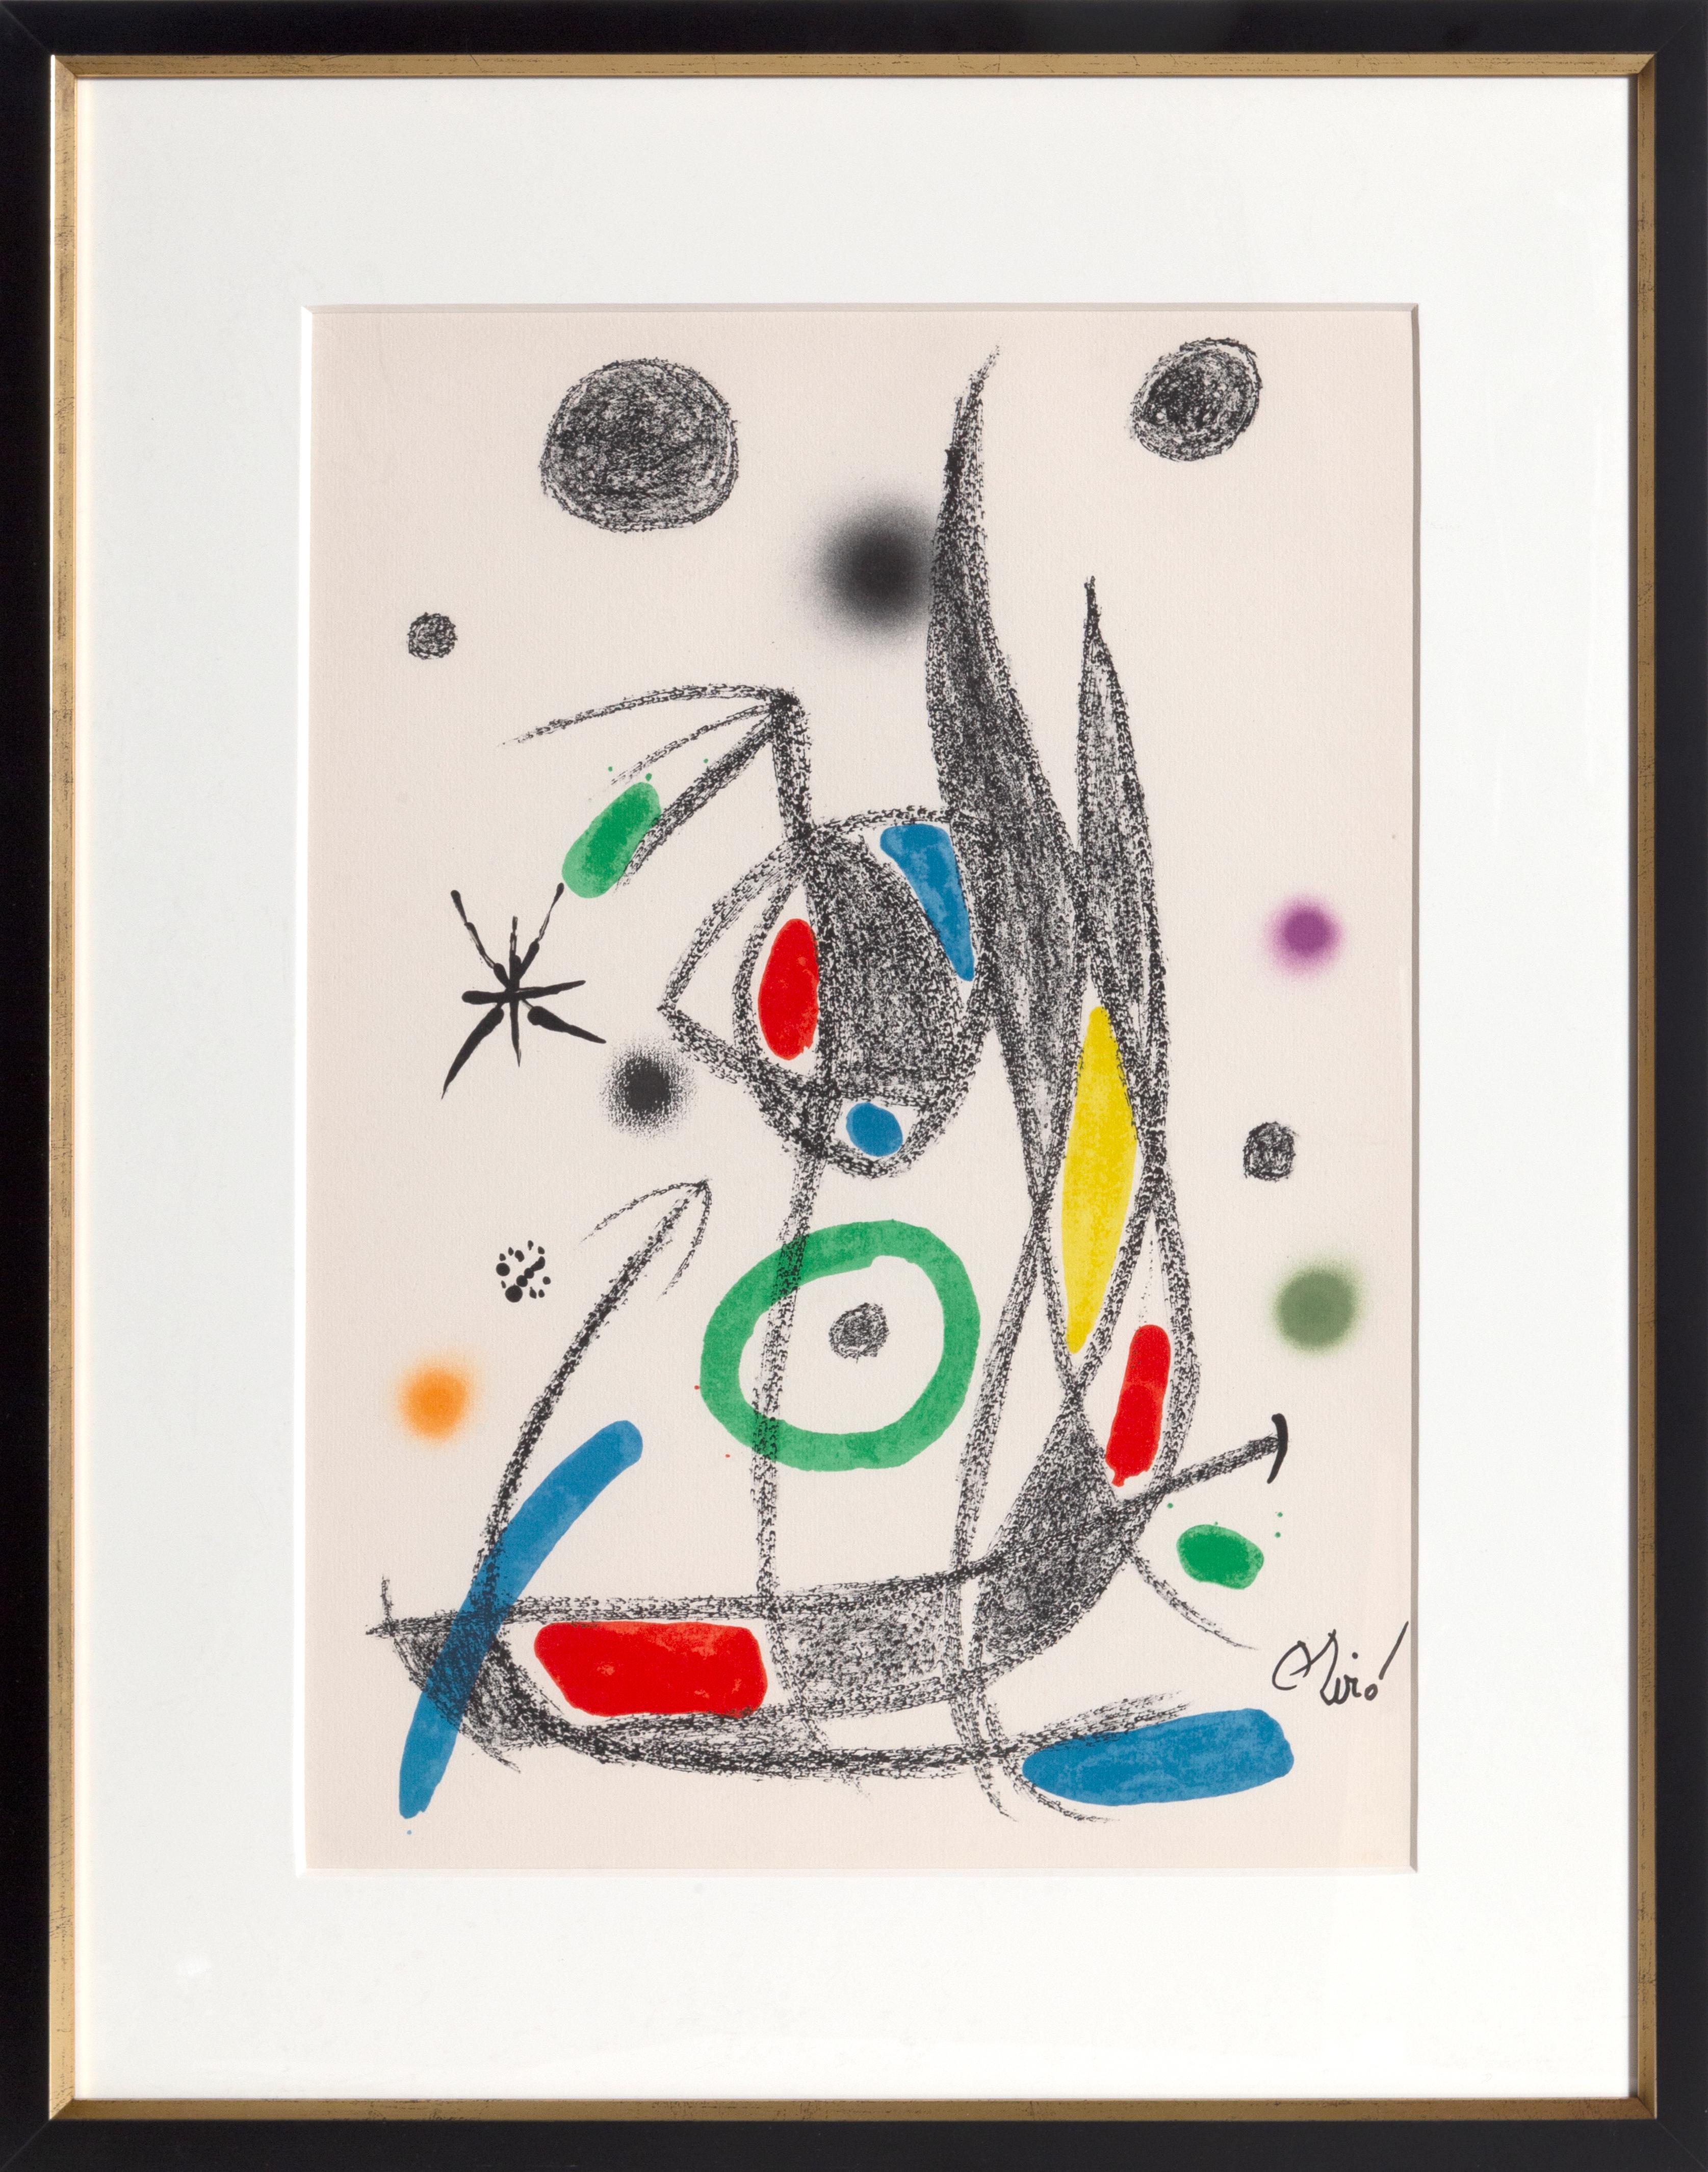 Abstract Print Joan Miró - Maravillas con Variaciones Acrosticas dans le Jardin de Miro (Number 16)